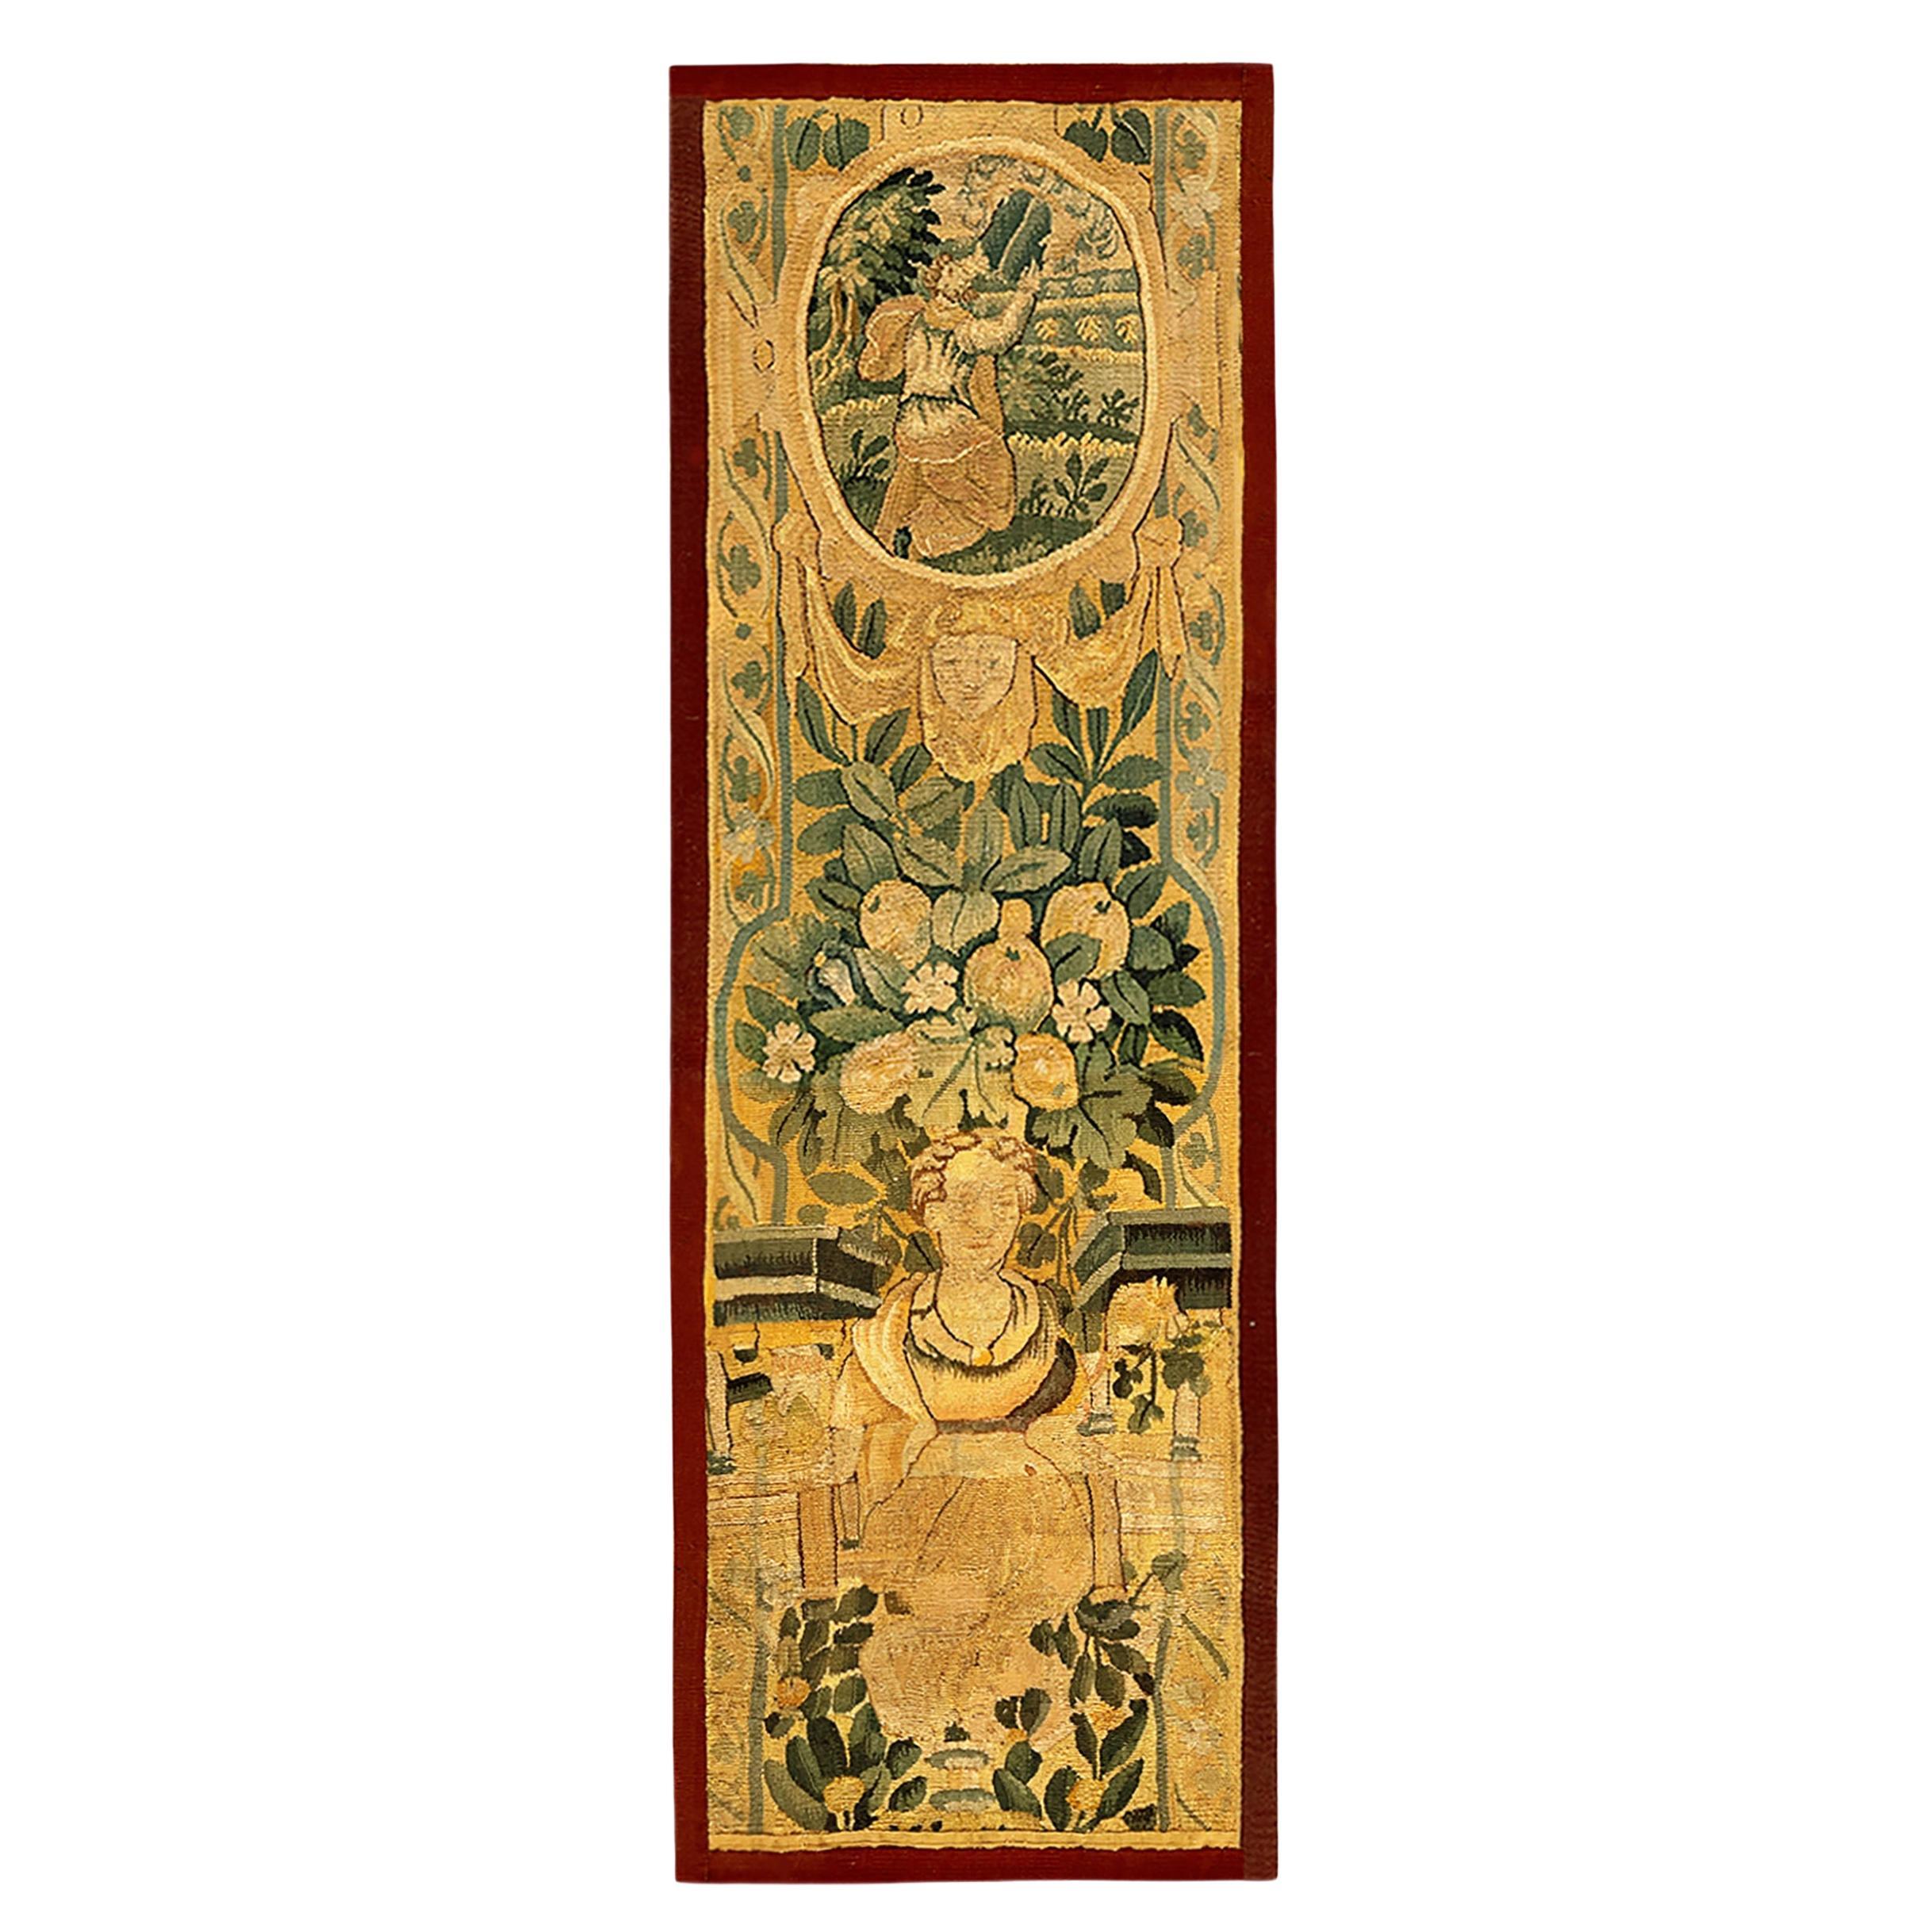 Panneau de tapisserie historique flamande du 17ème siècle, orienté verticalement avec pendentif